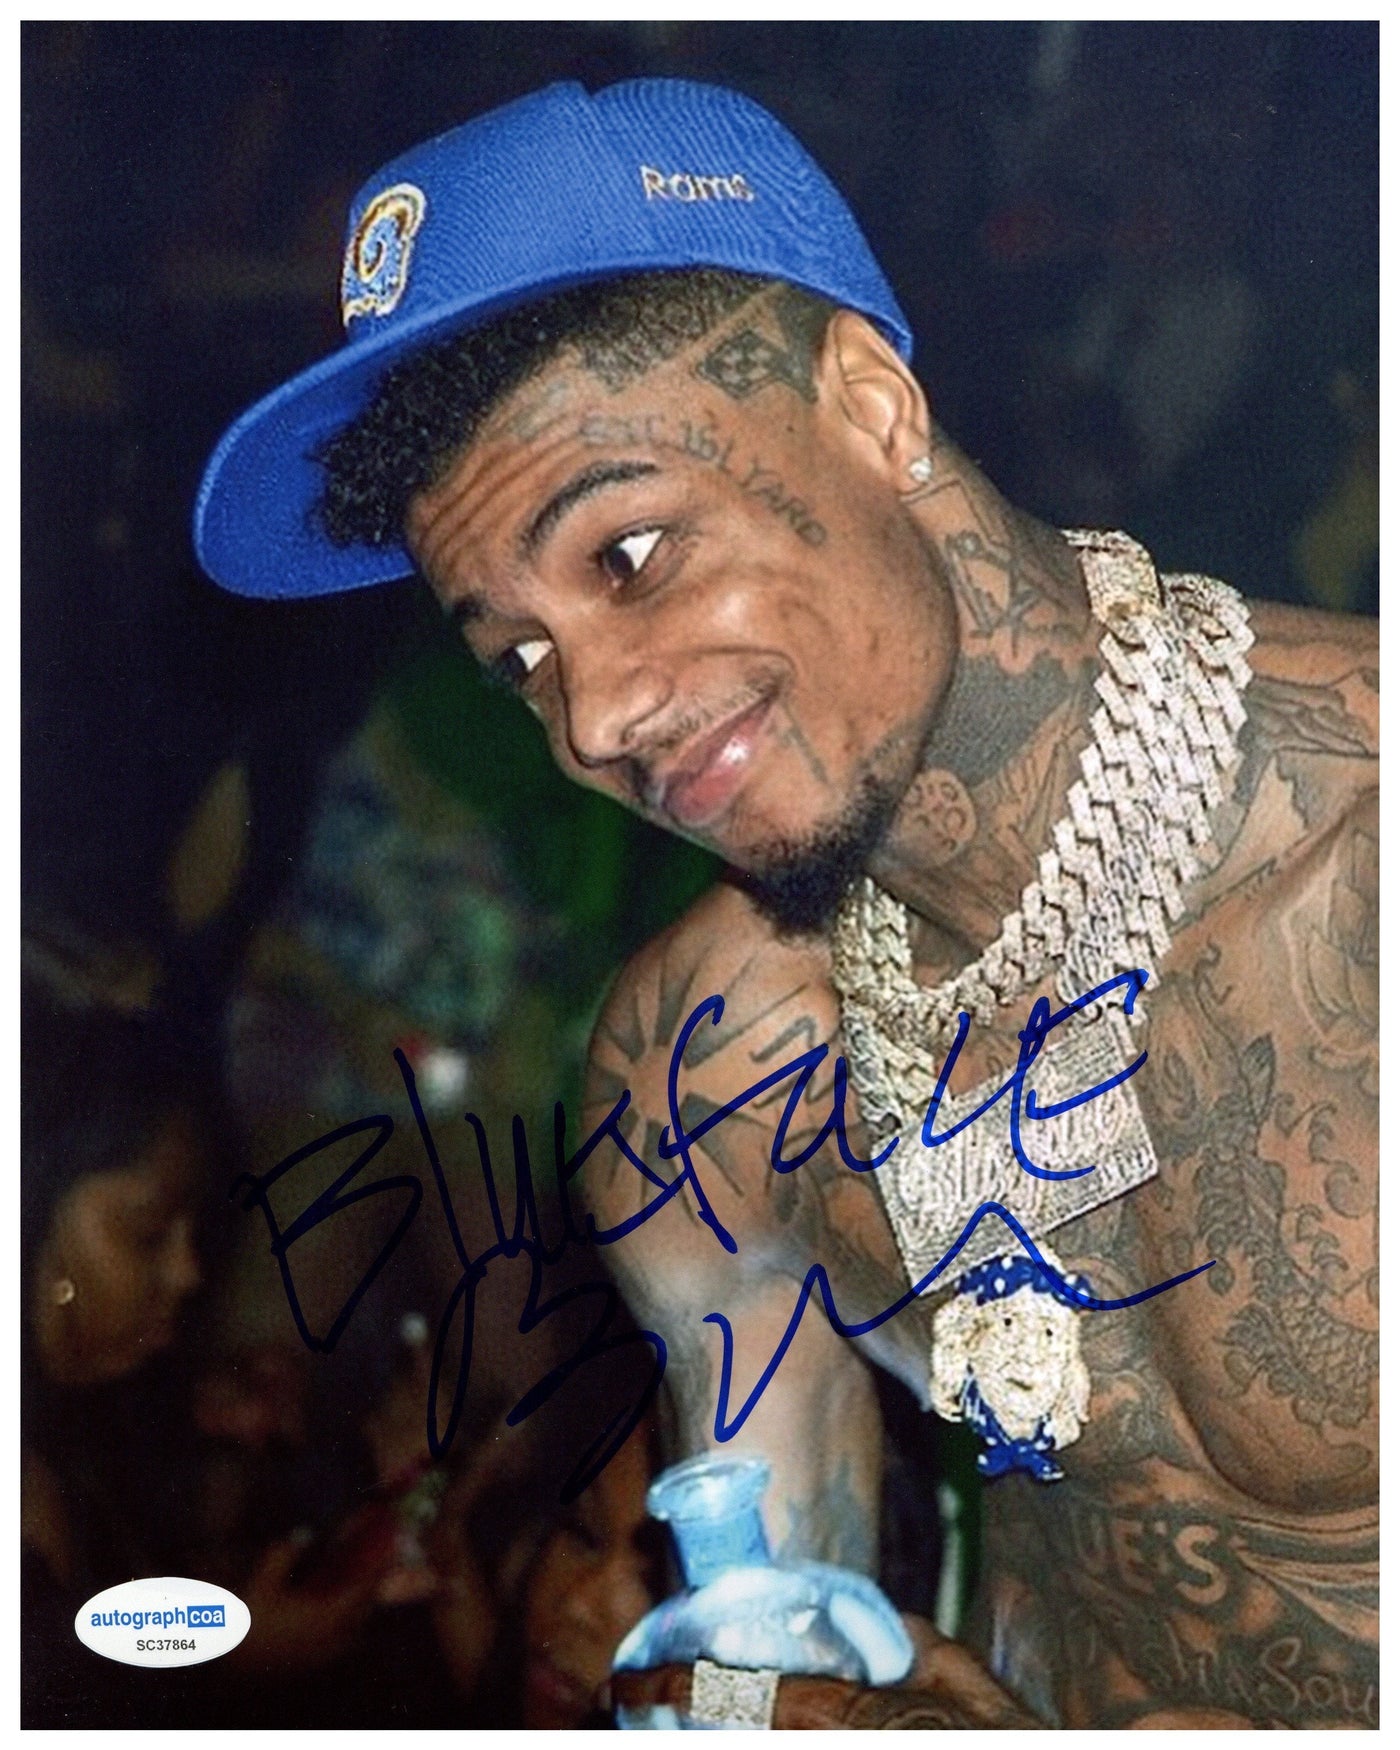 Blueface Signed 8x10 Photo Hip Hop Rapper Autographed Autograph COA